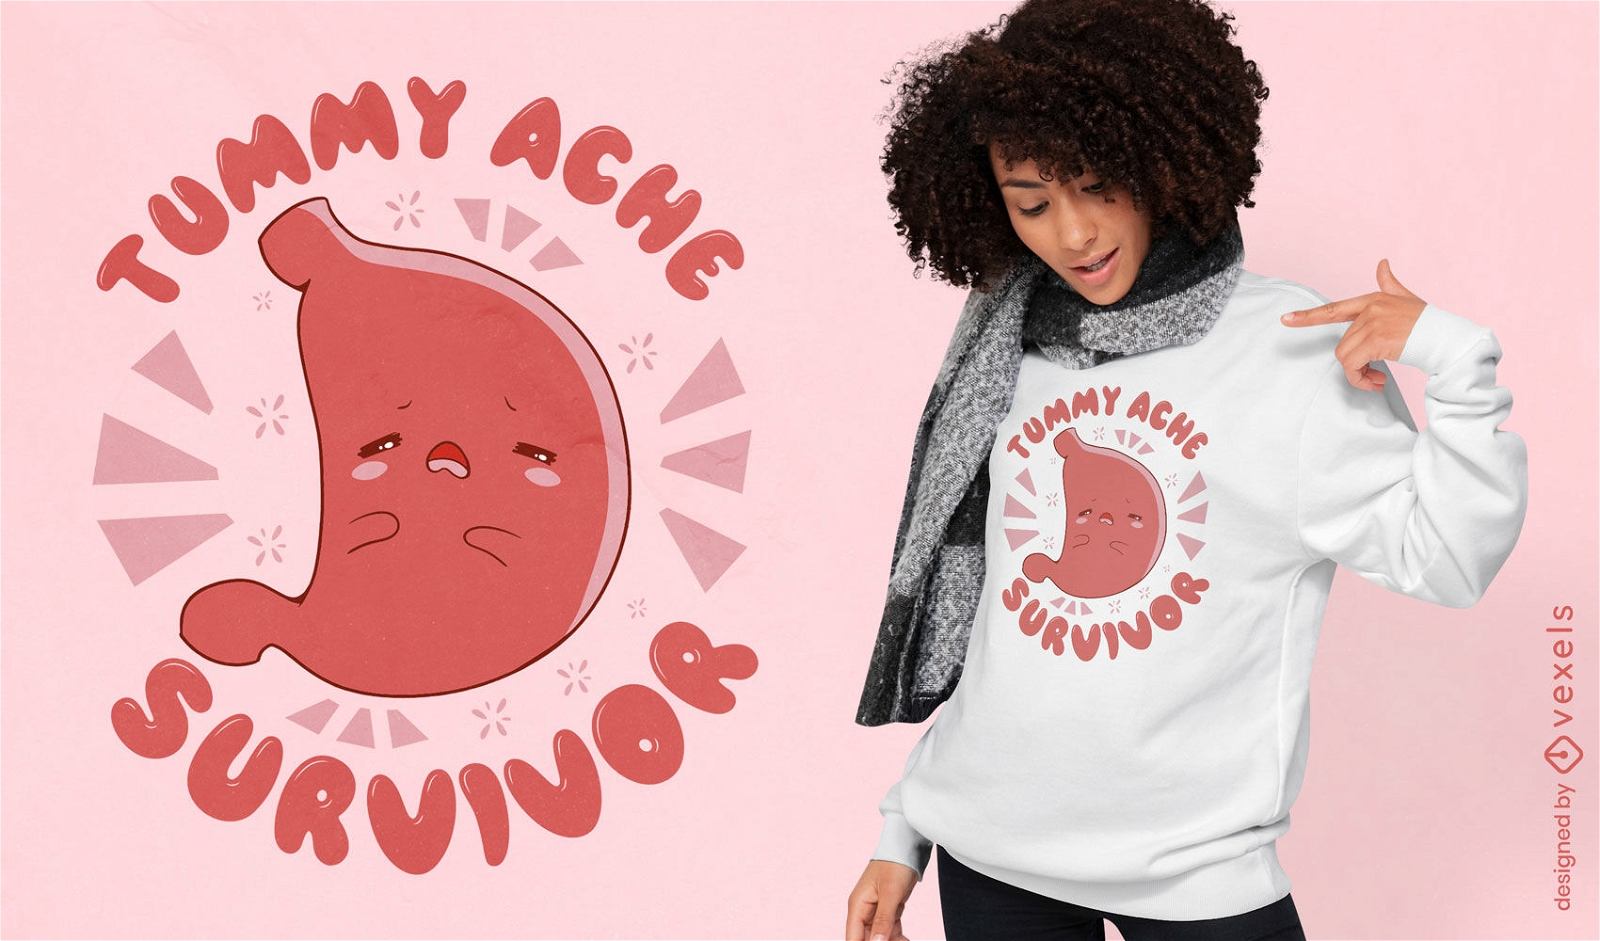 Tummy ache survivor stomach t-shirt design